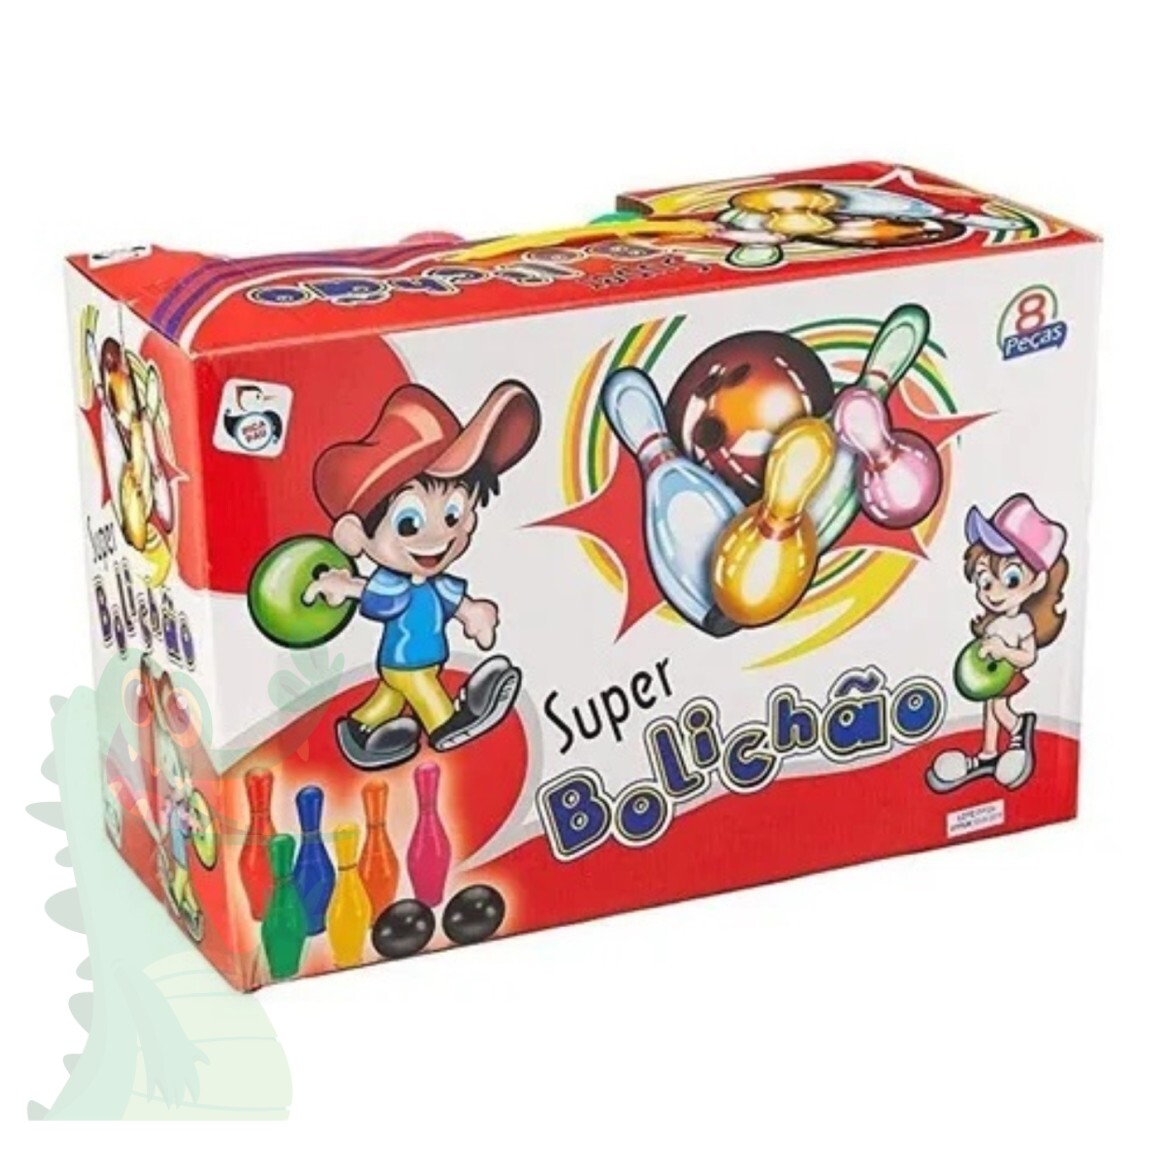 Jogo de Boliche - Super Bolichão - 649 - Pica Pau - Real Brinquedos